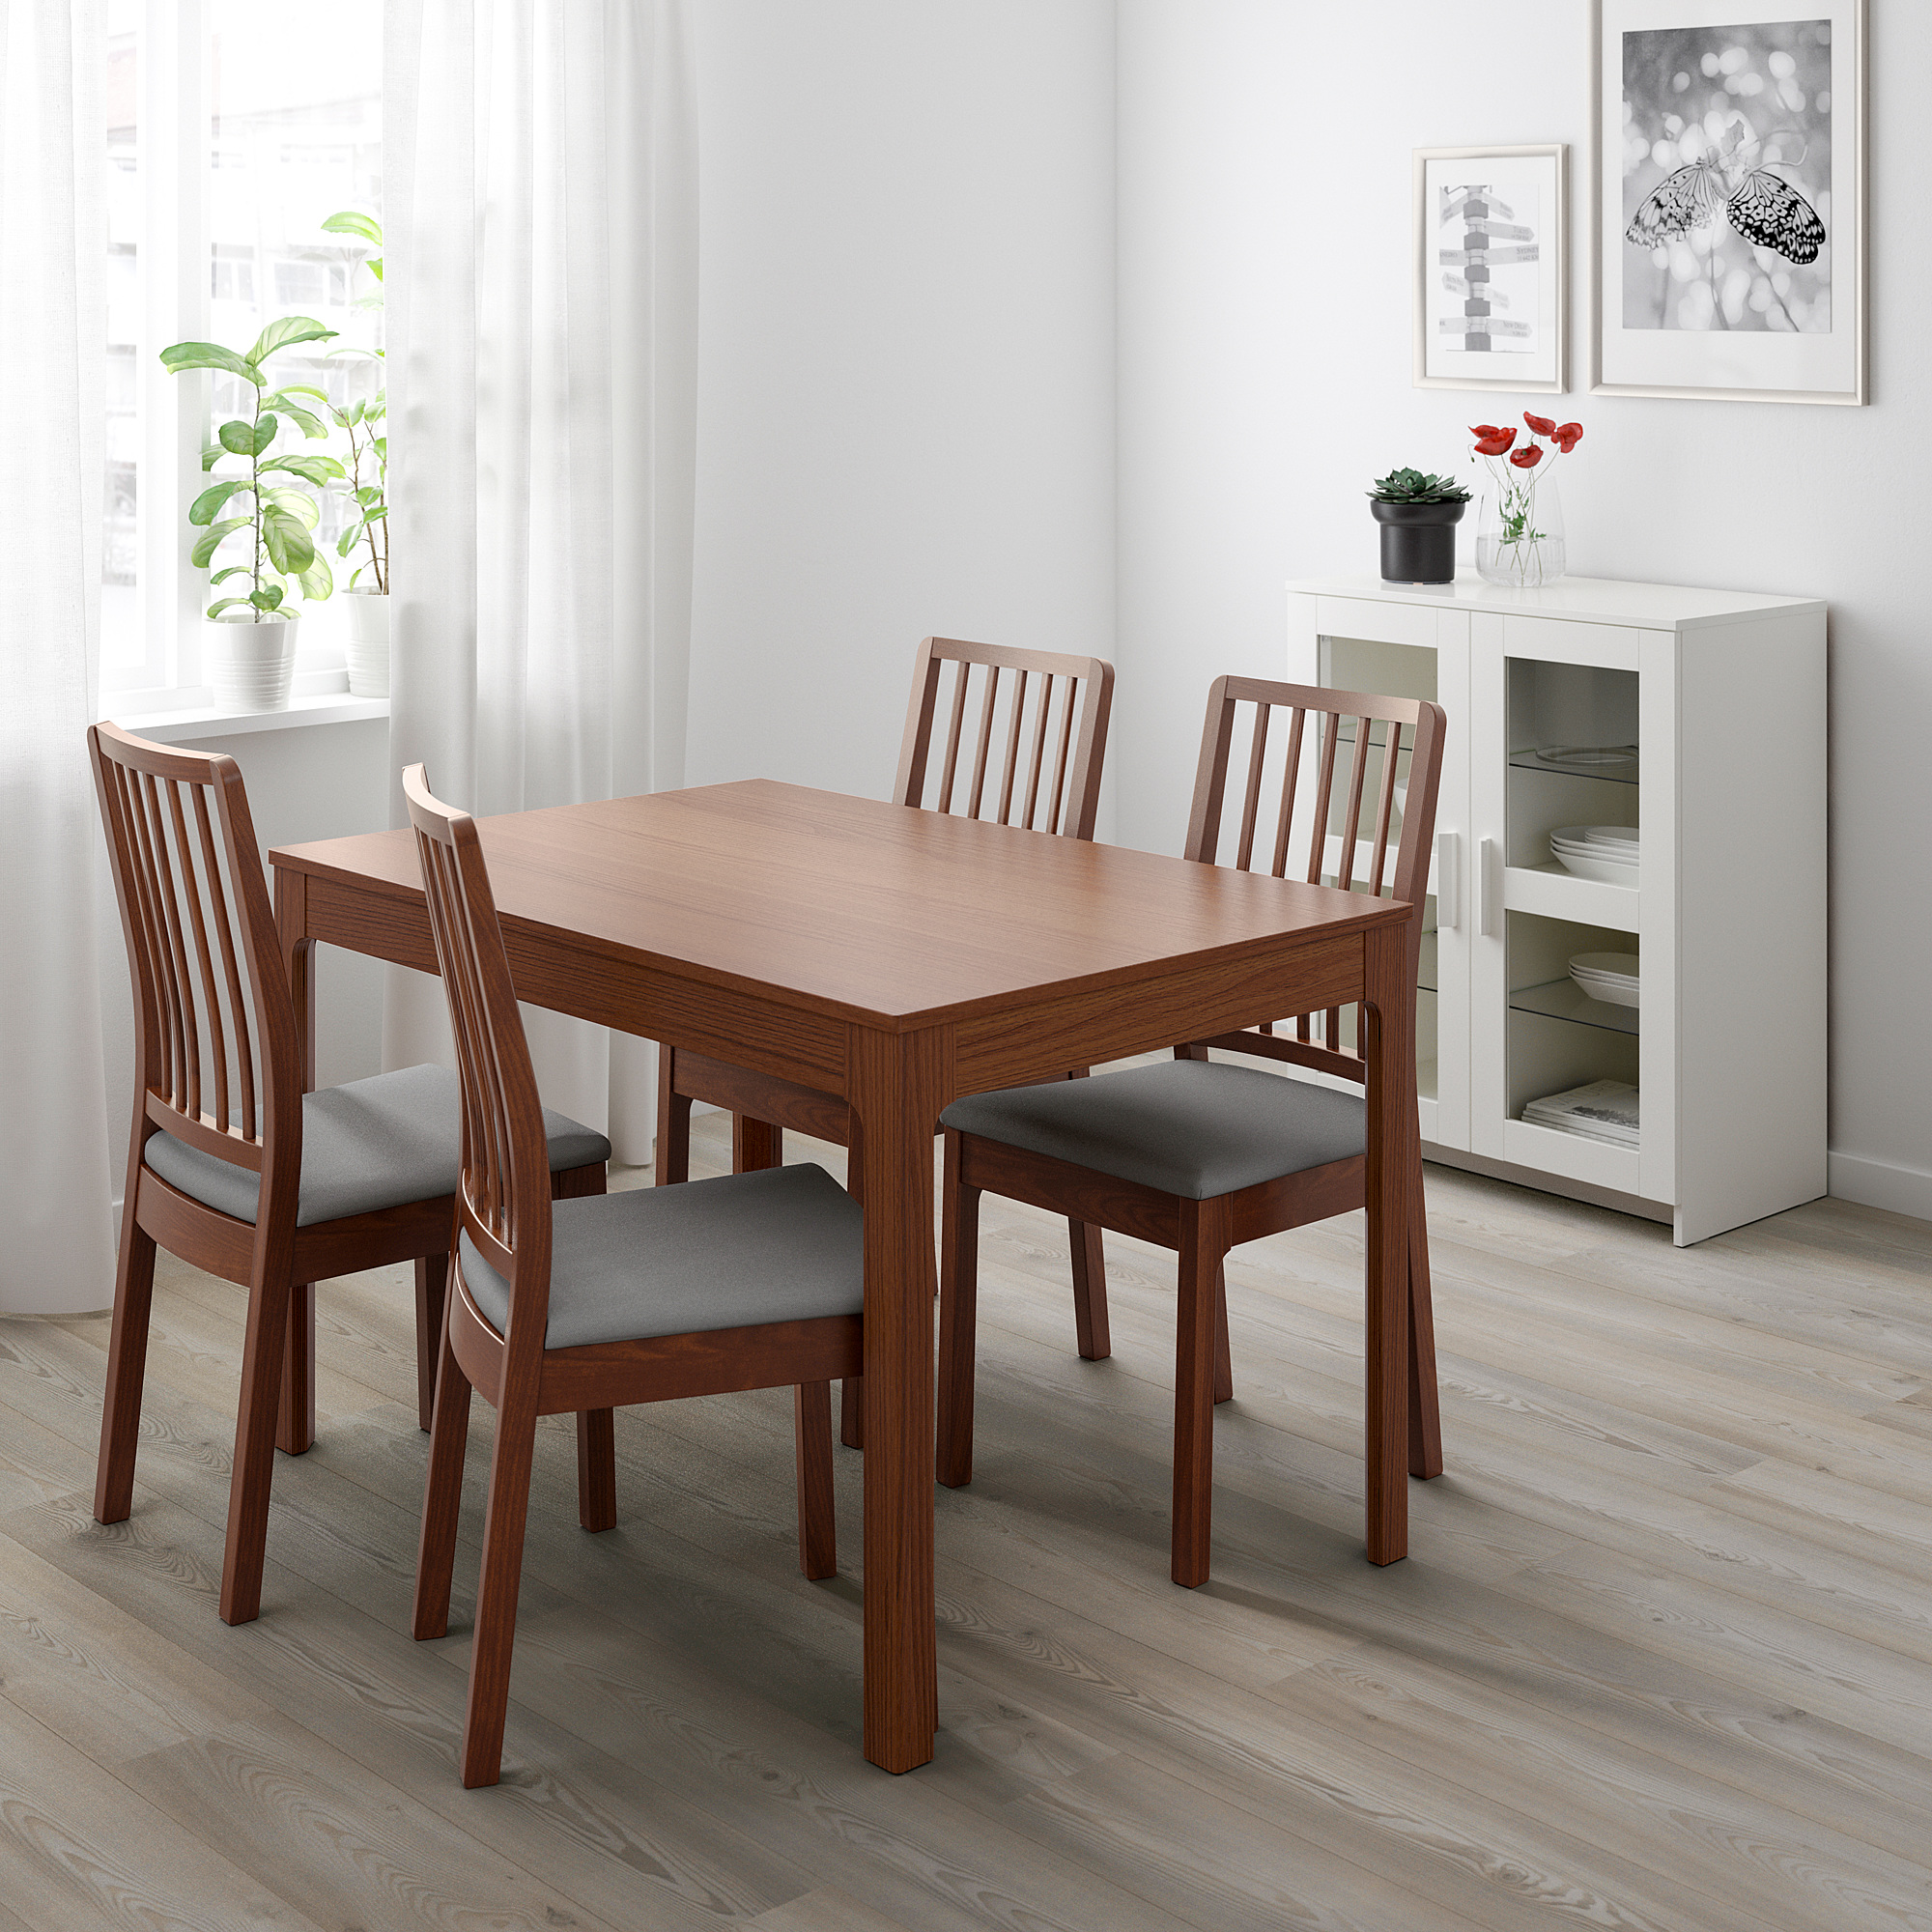 Стол кухонный коричневый. EKEDALEN ЭКЕДАЛЕН раздвижной стол, коричневый, 120/180x80 см. EKEDALEN ЭКЕДАЛЕН раздвижной стол. EKEDALEN ЭКЕДАЛЕН раздвижной стол, белый120/180x80 см. Ikea стул ЭКЕДАЛЕН.